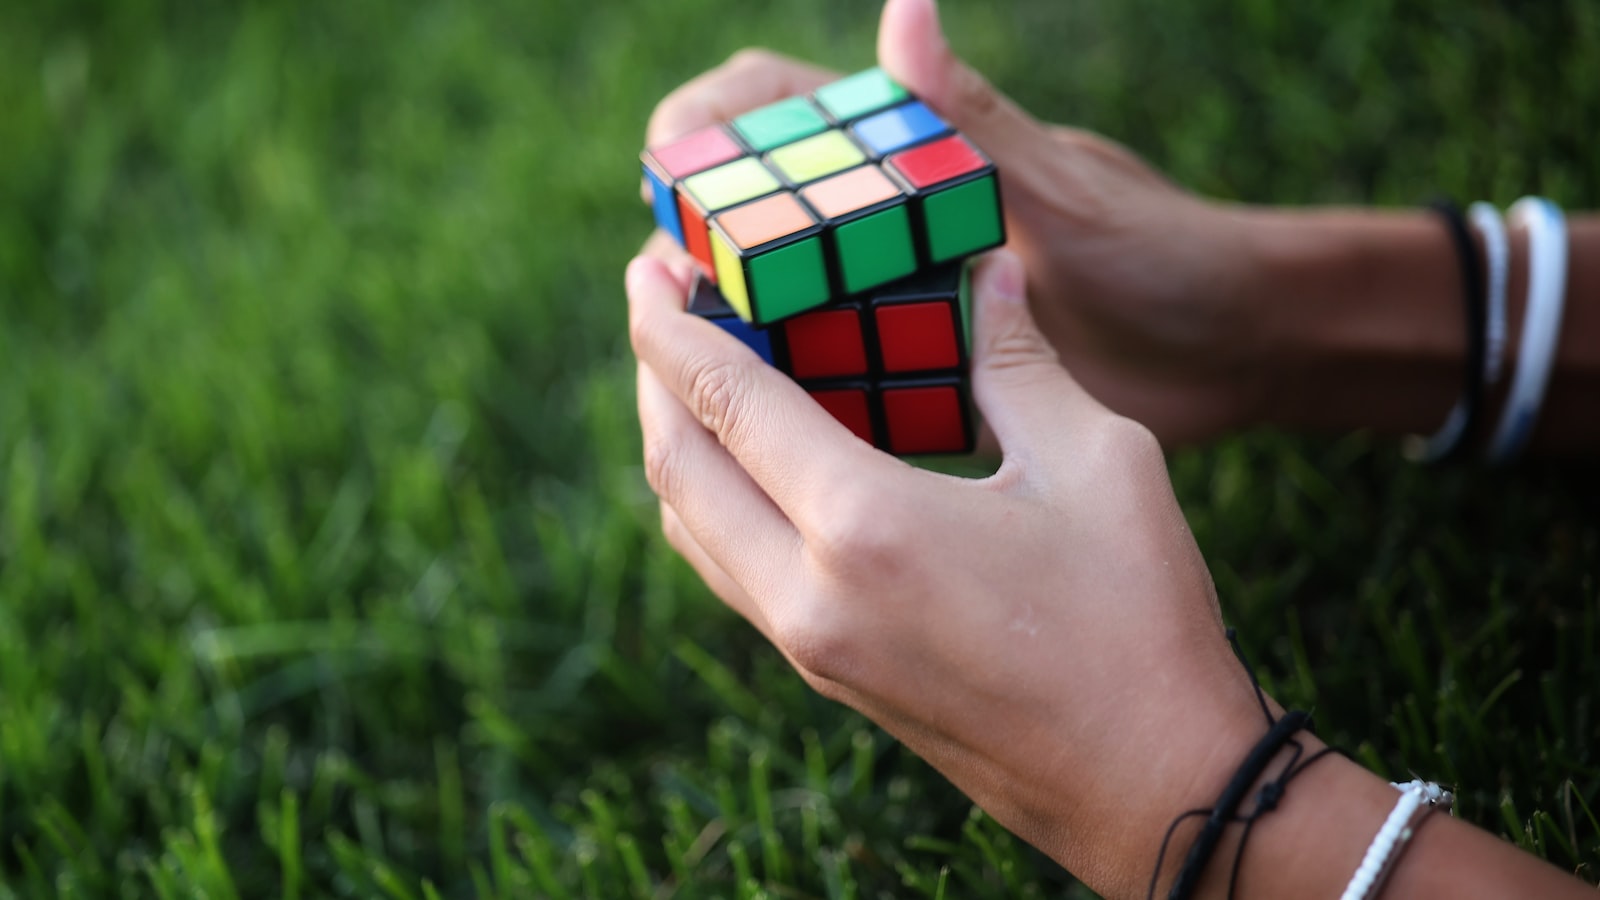 2. Hướng dẫn chơi Rubik 4x4 chi tiết